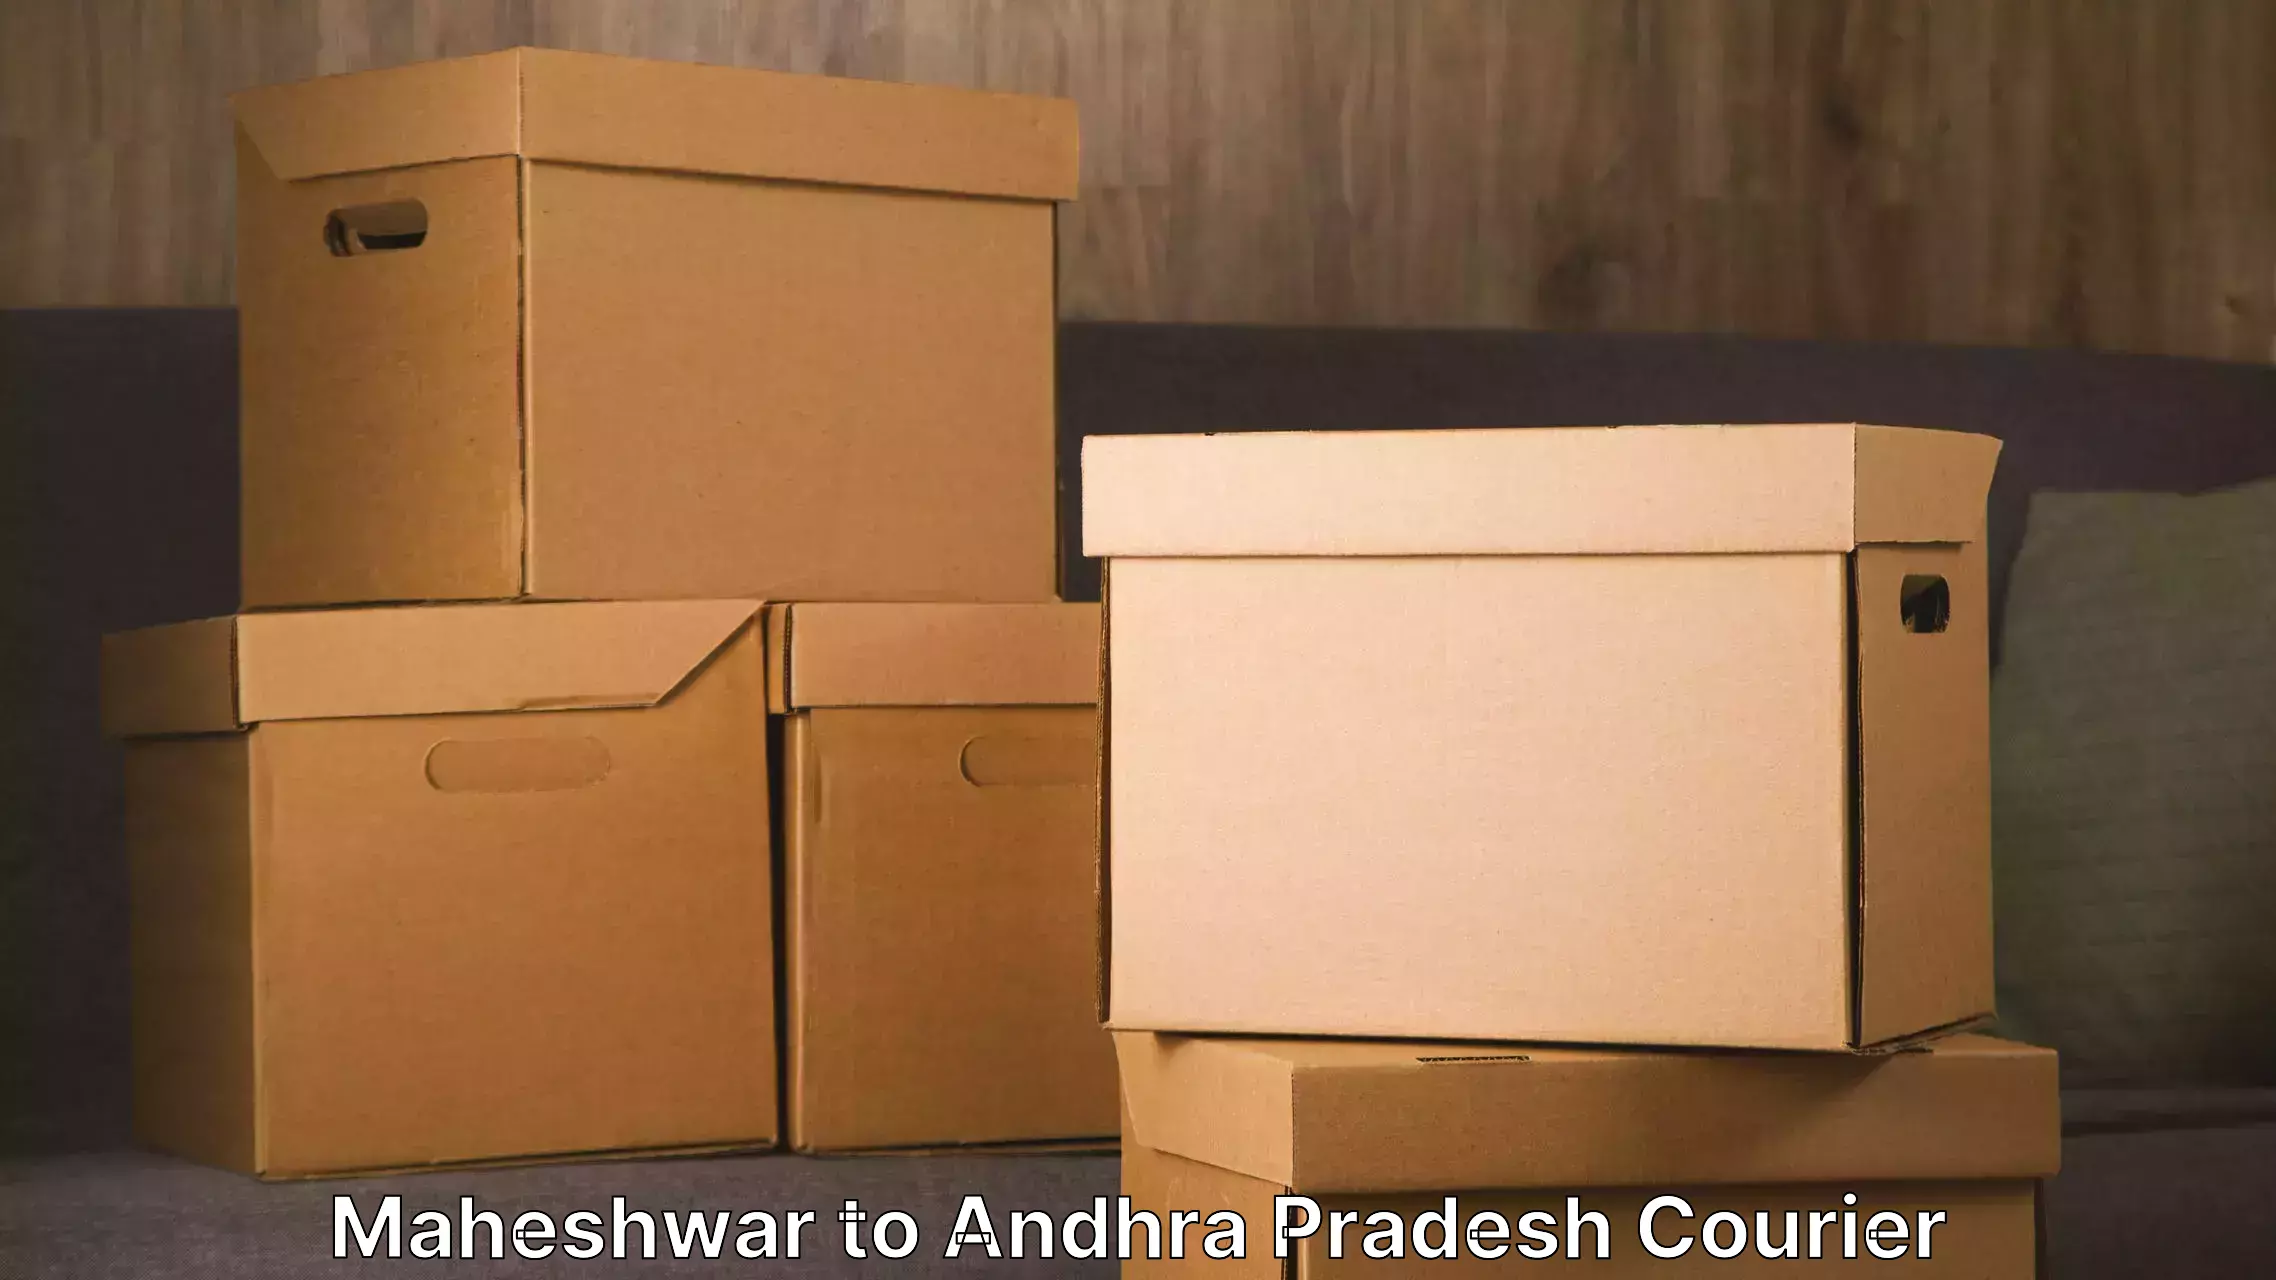 Furniture transport experts Maheshwar to Kudair